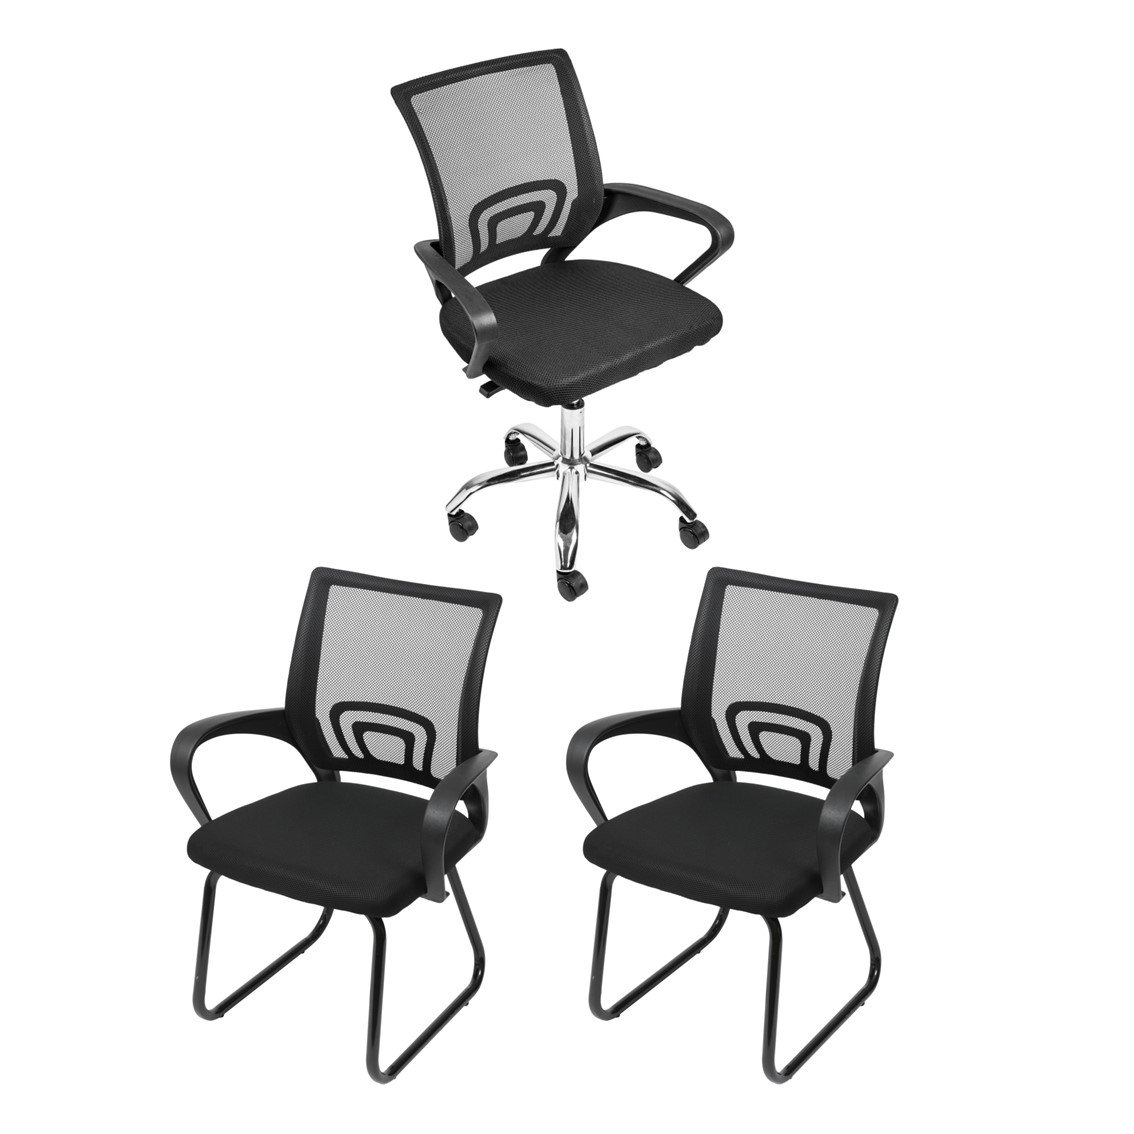 Kit Cadeira de Escritório 3 Peças com 1 Cadeira Tok Rodízio e 2 Cadeiras Tok Fixa OR Design